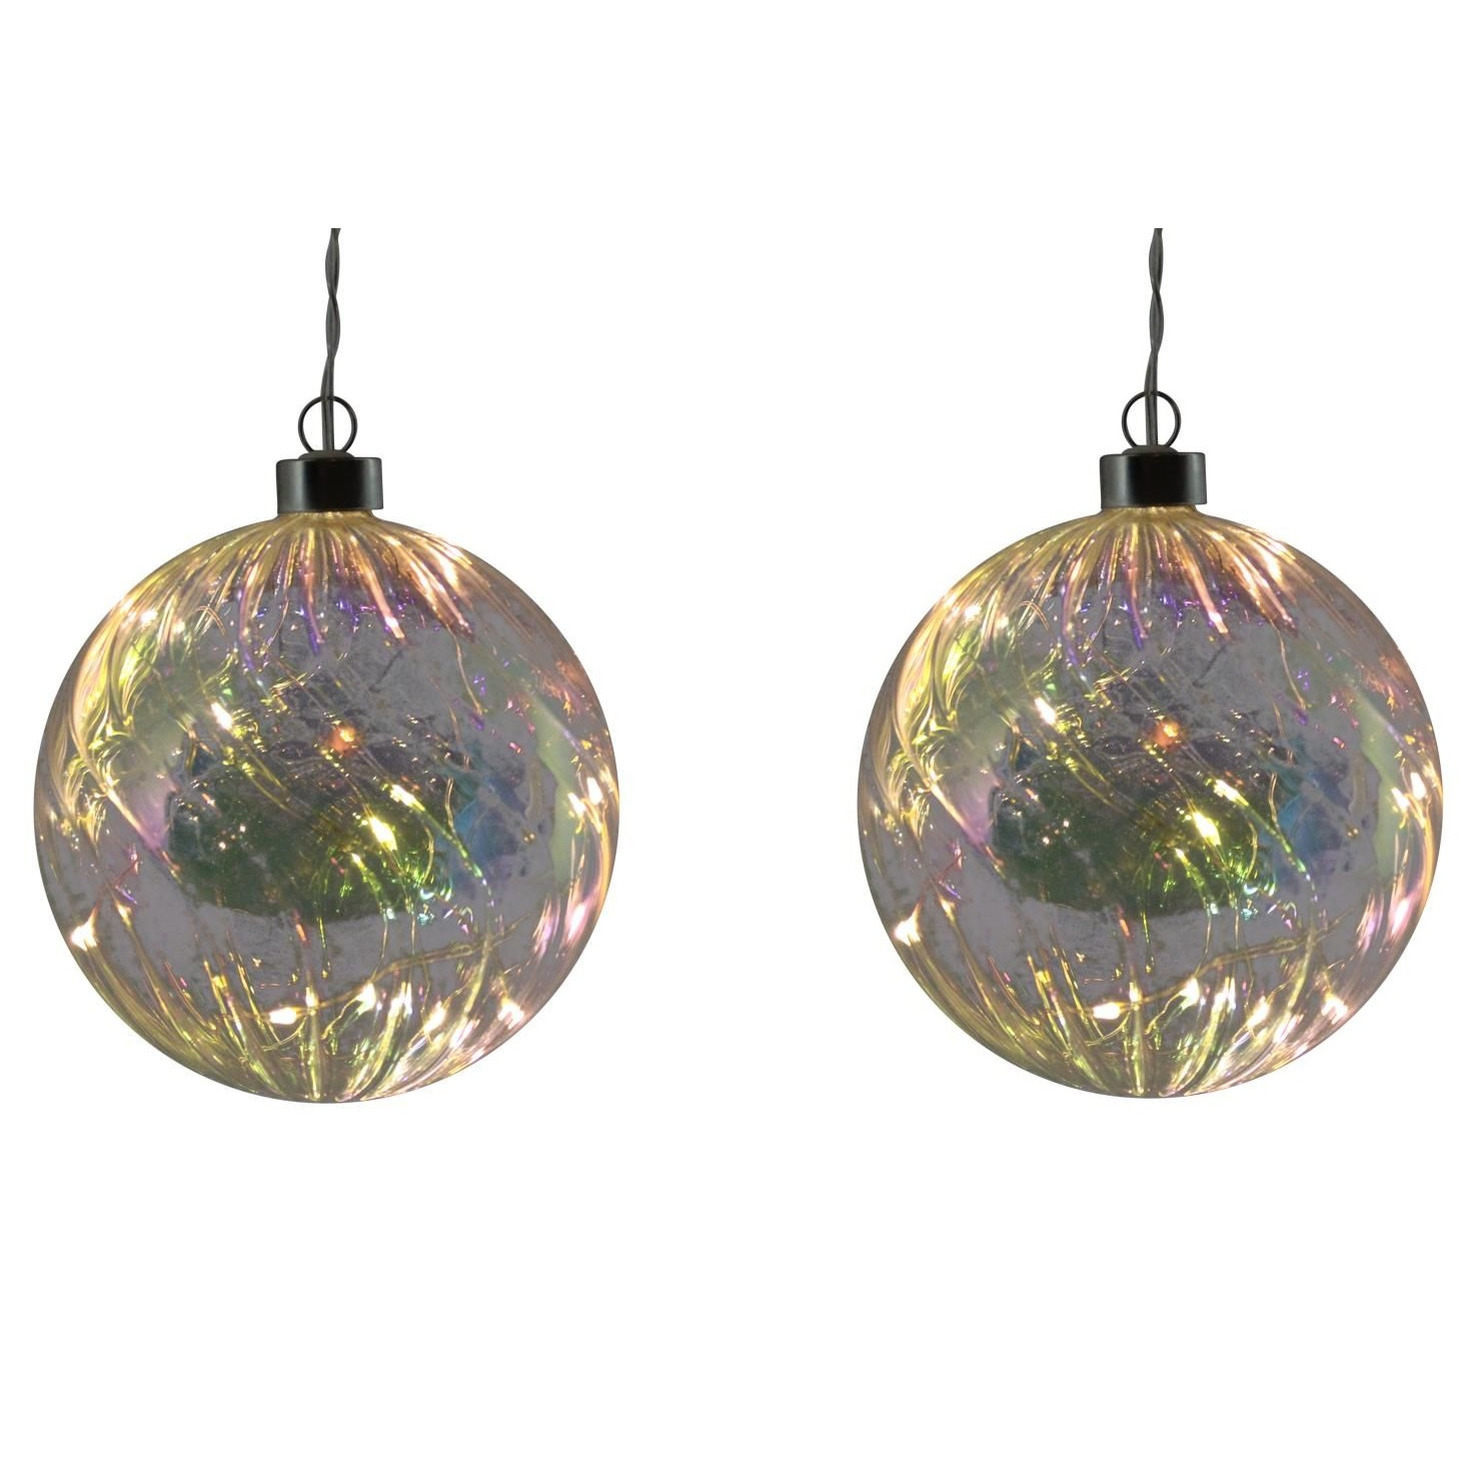 2x stuks verlichte glazen kerstballen met 10 lampjes transparant parelmoer 12 cm